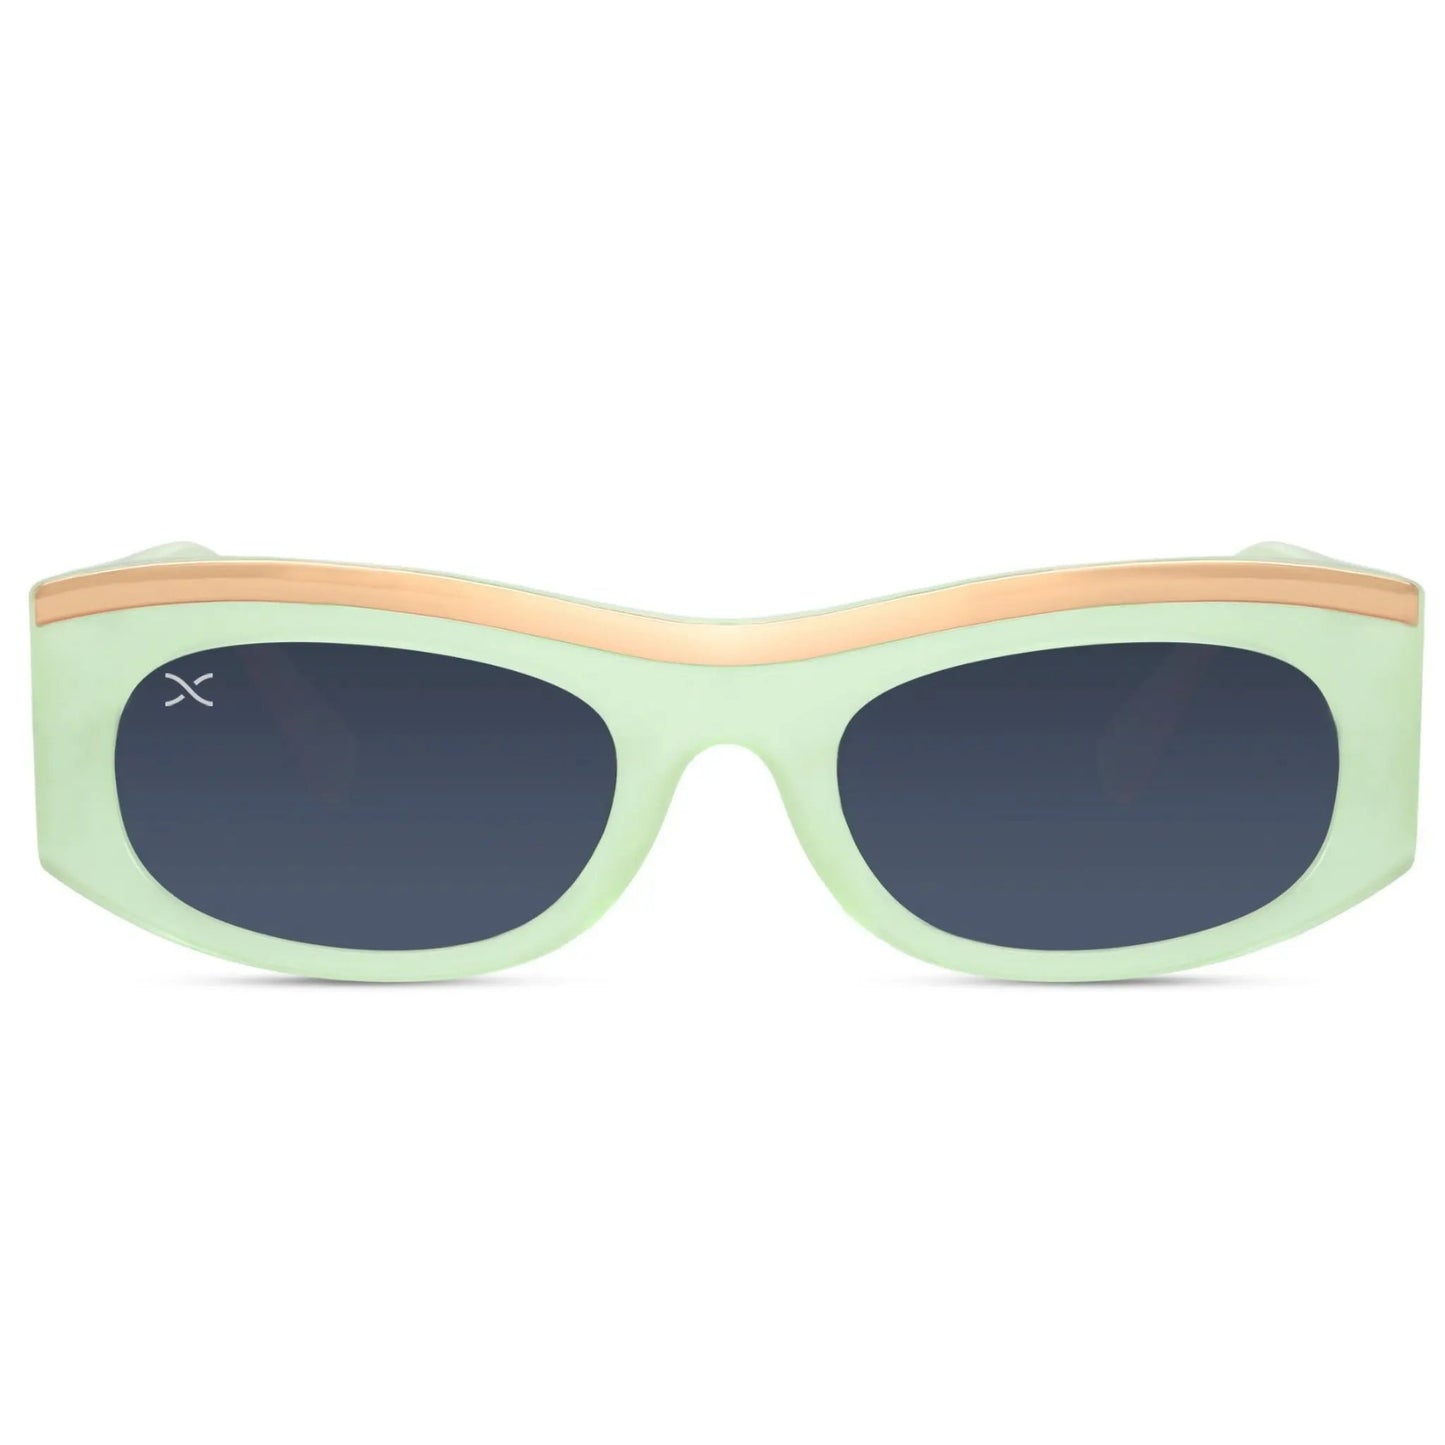 Ορθογώνια Γυαλιά Ηλίου Lisboa της Exposure Sunglasses με προστασία UV400 σε πράσινο χρώμα σκελετού και μαύρο φακό.